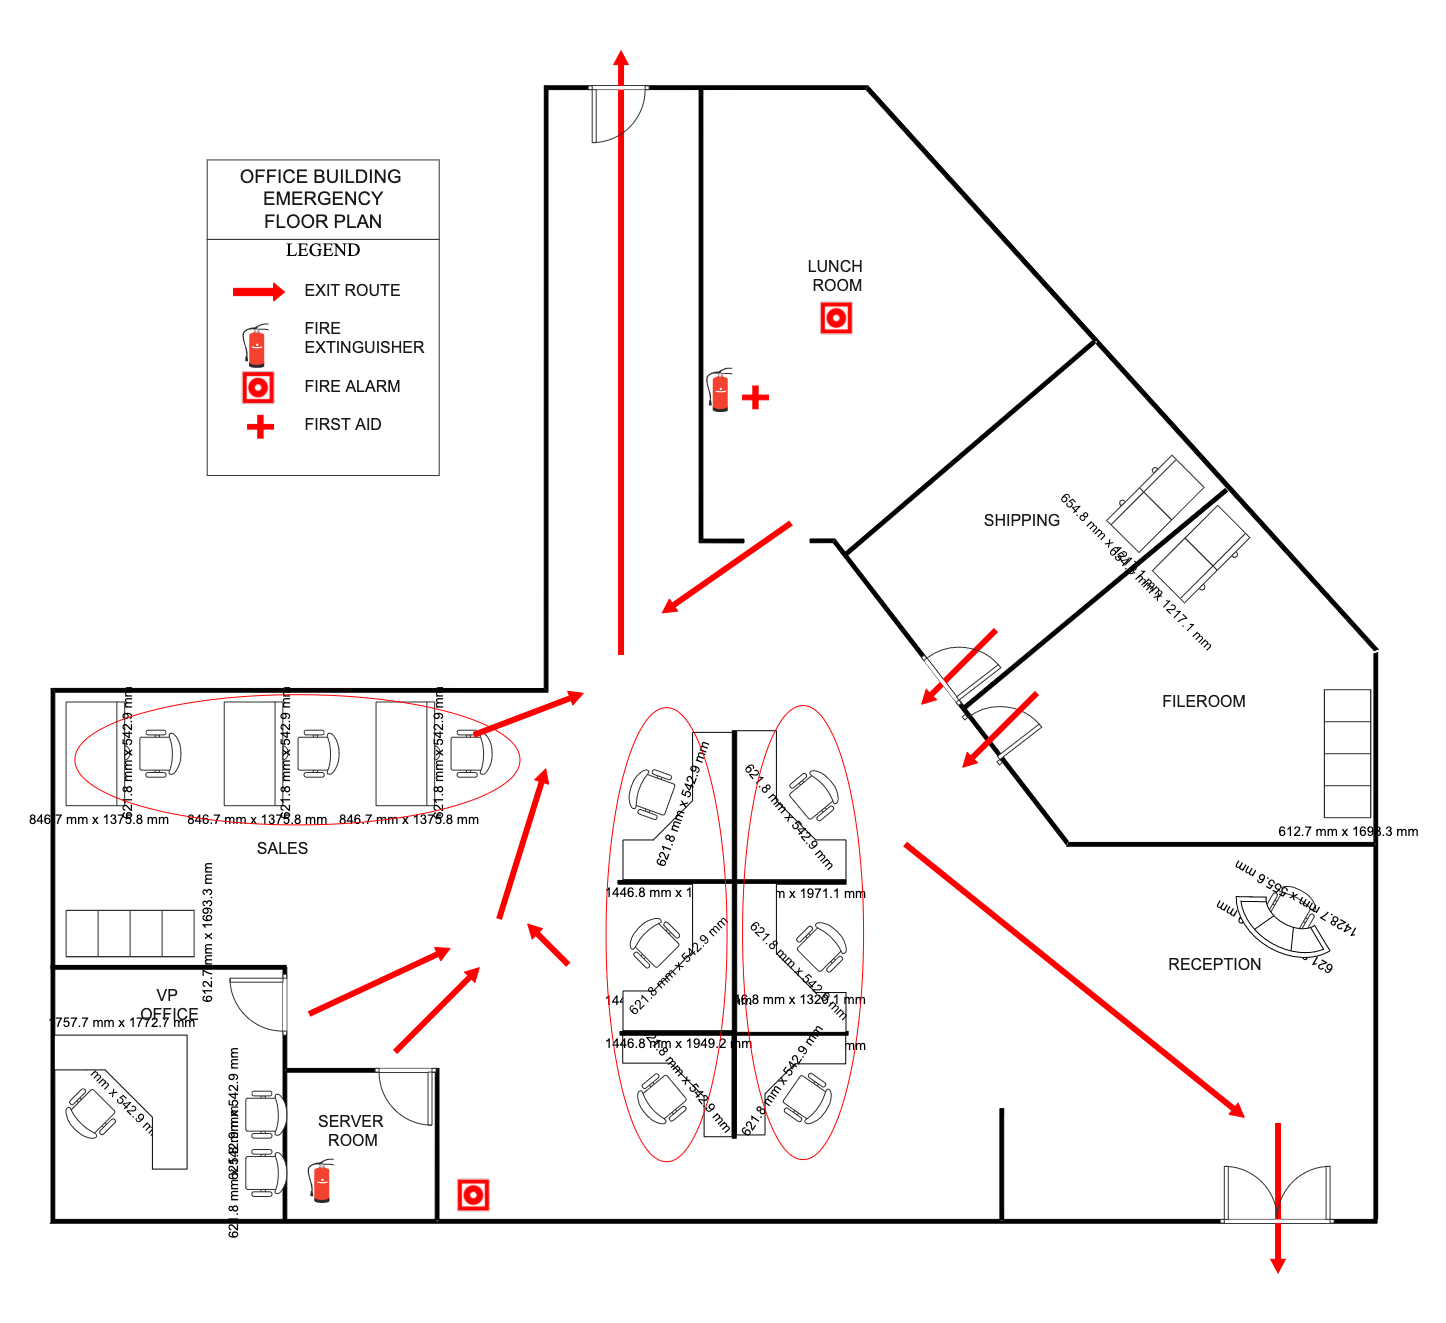 Office Building Emergency Floor Plan